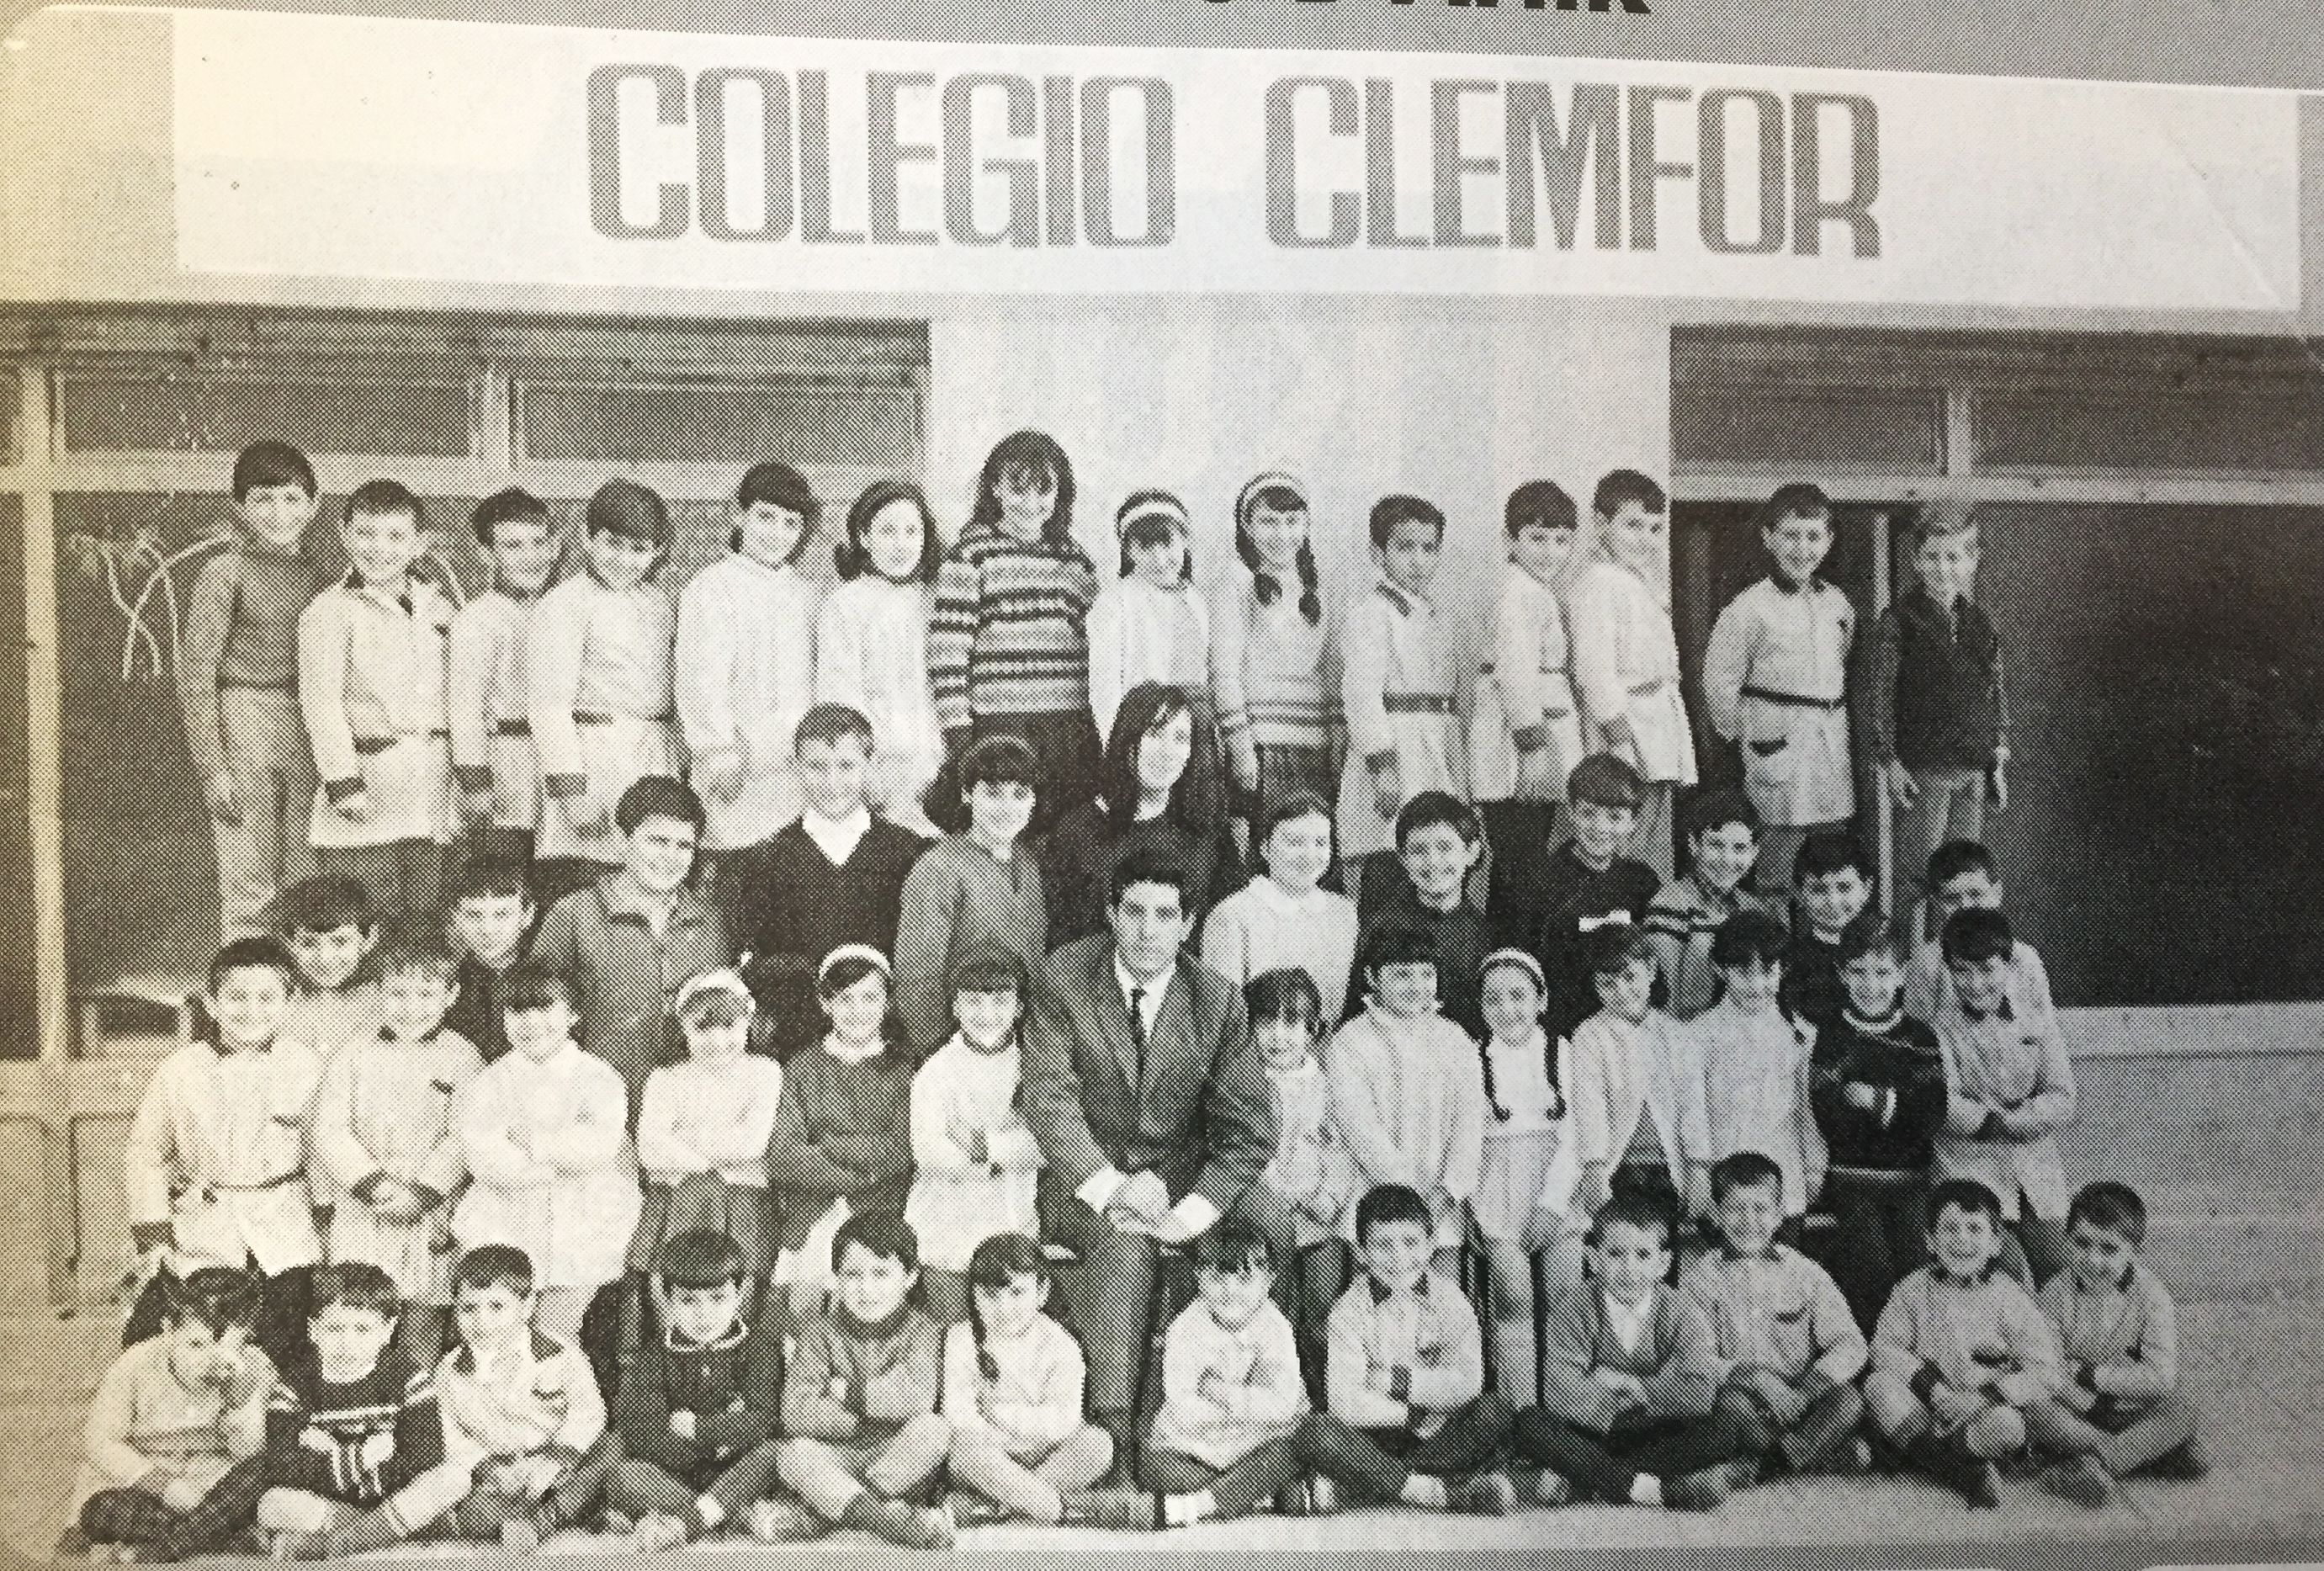 Fotografia històrica del Col.legi Clemfor, de Cerdanyola del Vallès, publicada al TOT 1994